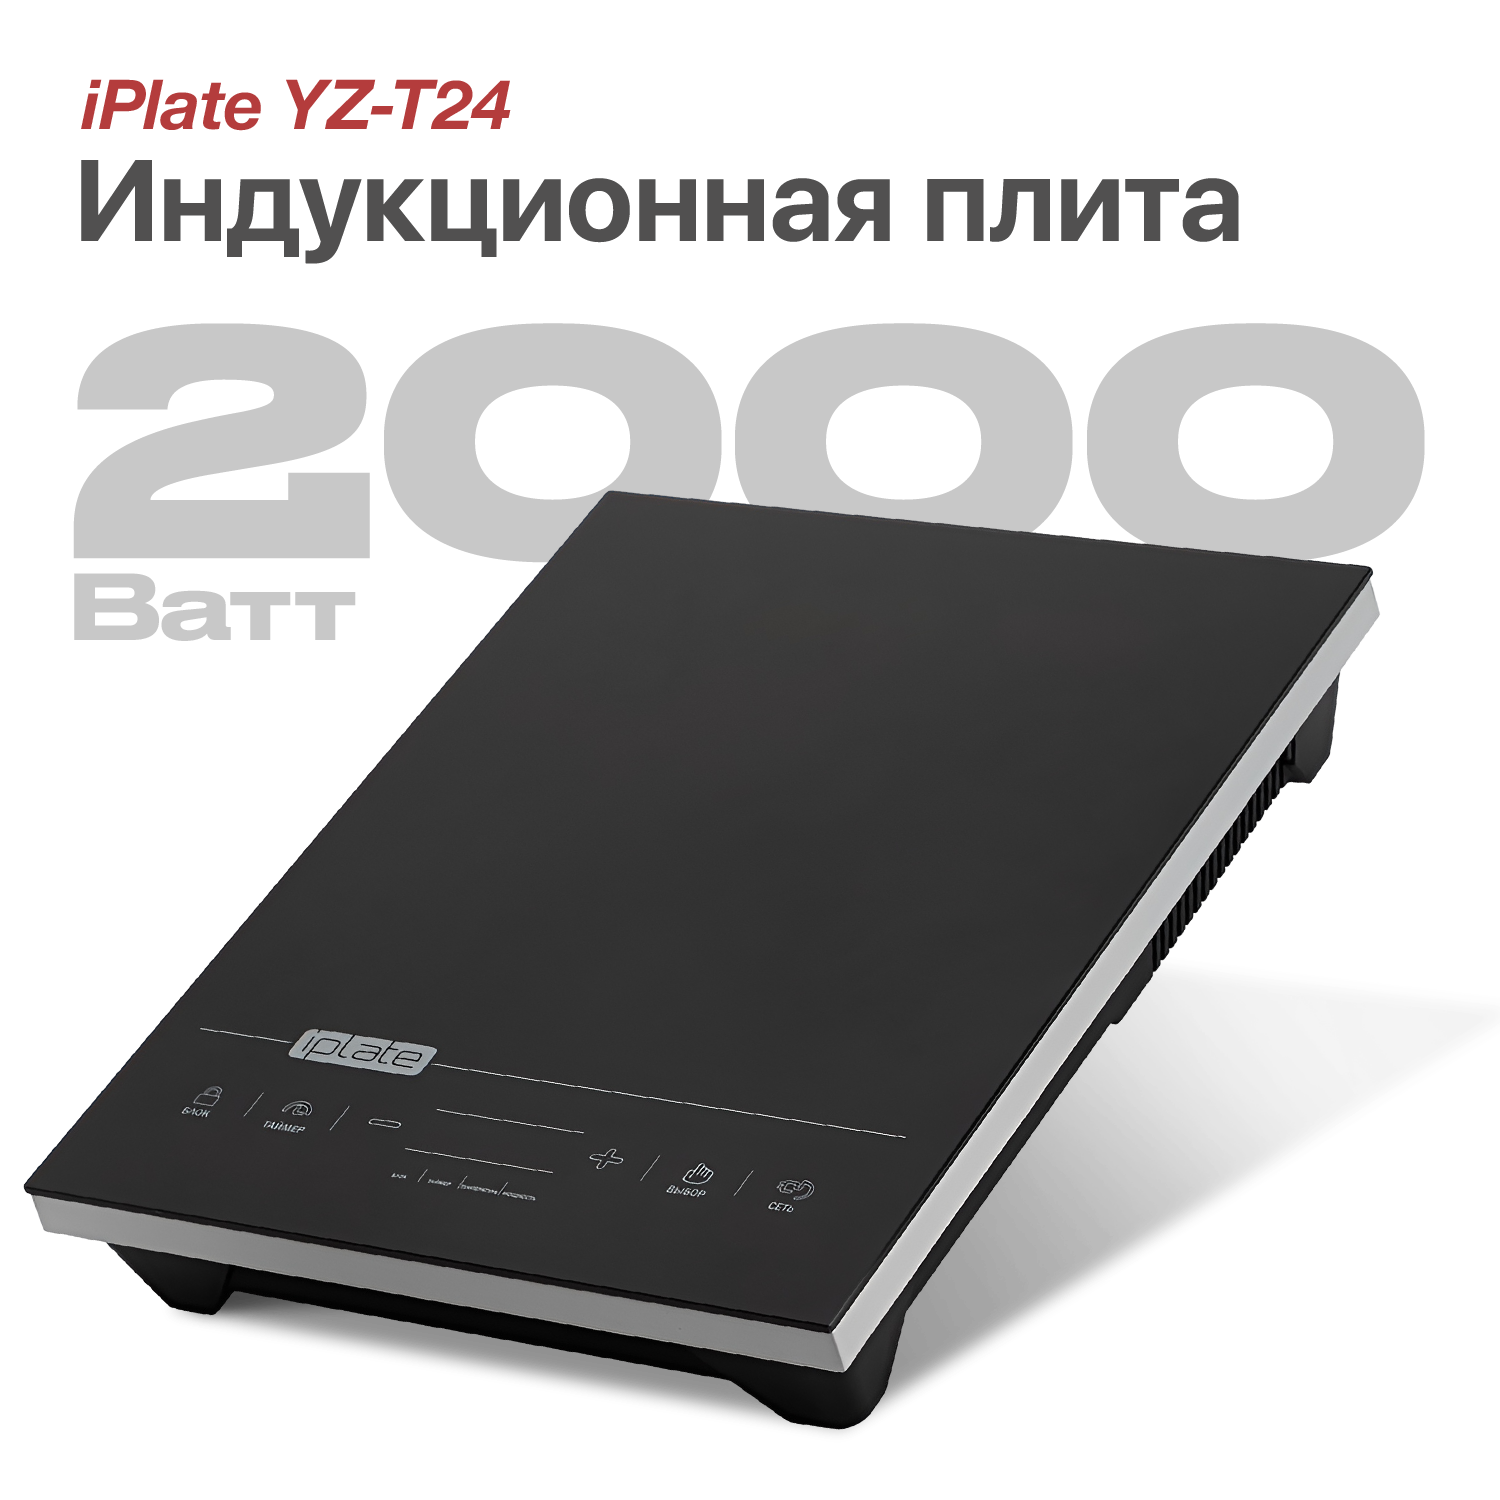 Индукционная плита iPlate YZ-T24 (Поколение 8), 2000 Вт